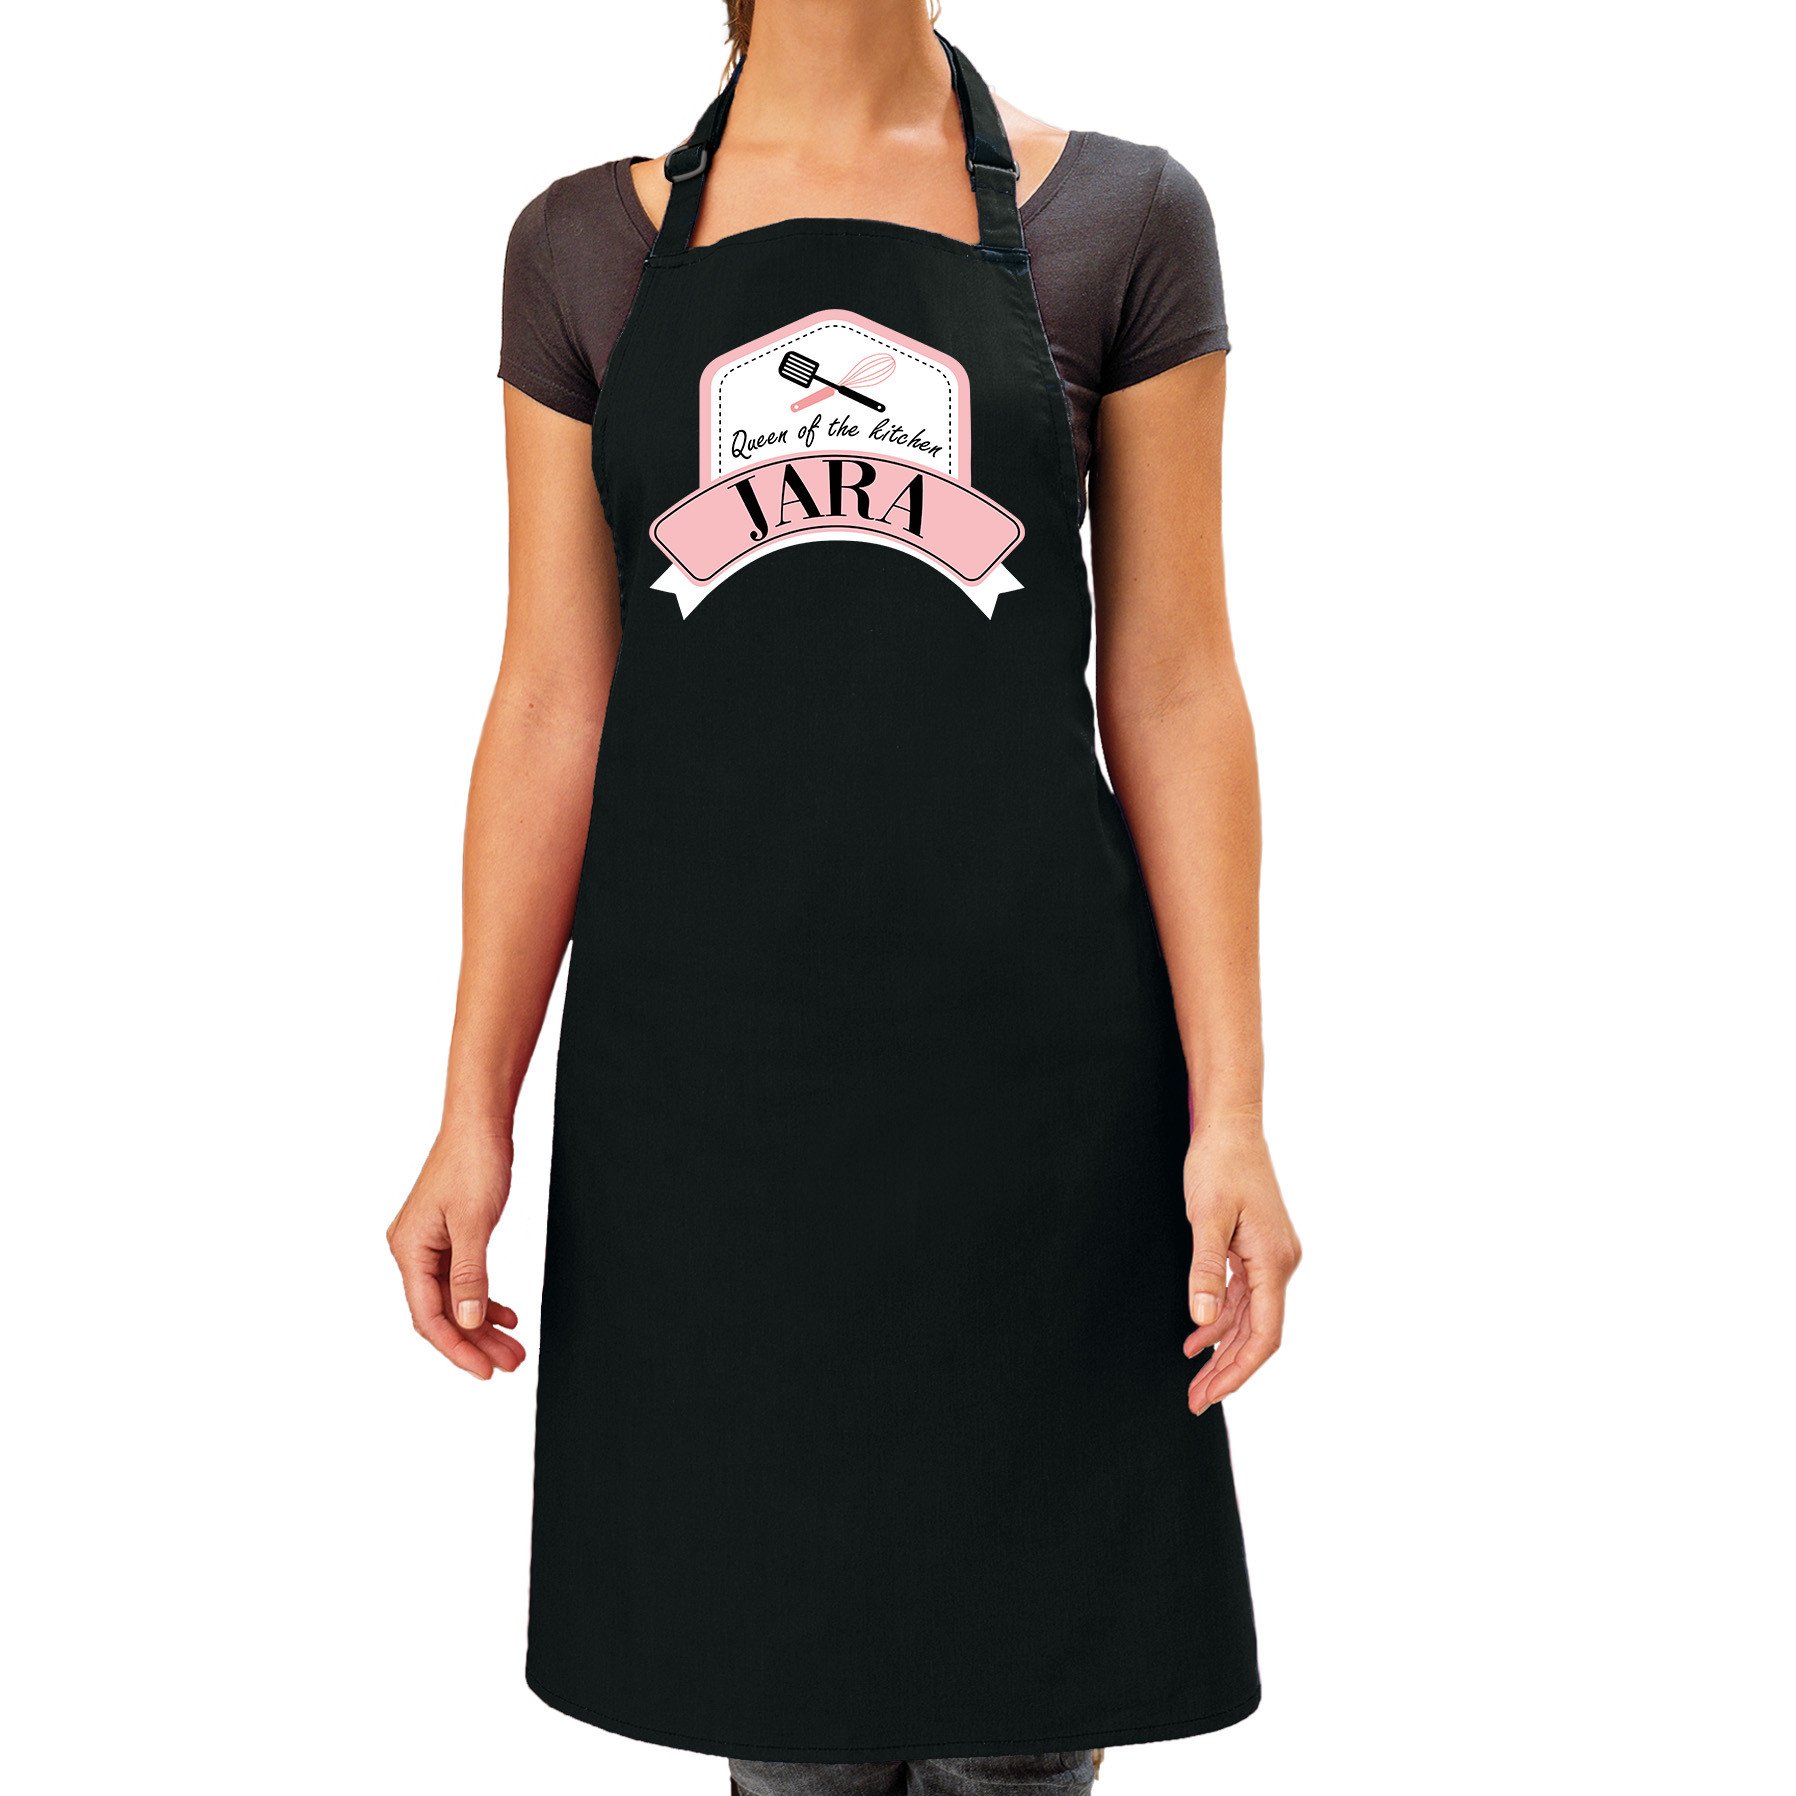 Queen of the kitchen Jara keukenschort/ barbecue schort zwart voor dames -